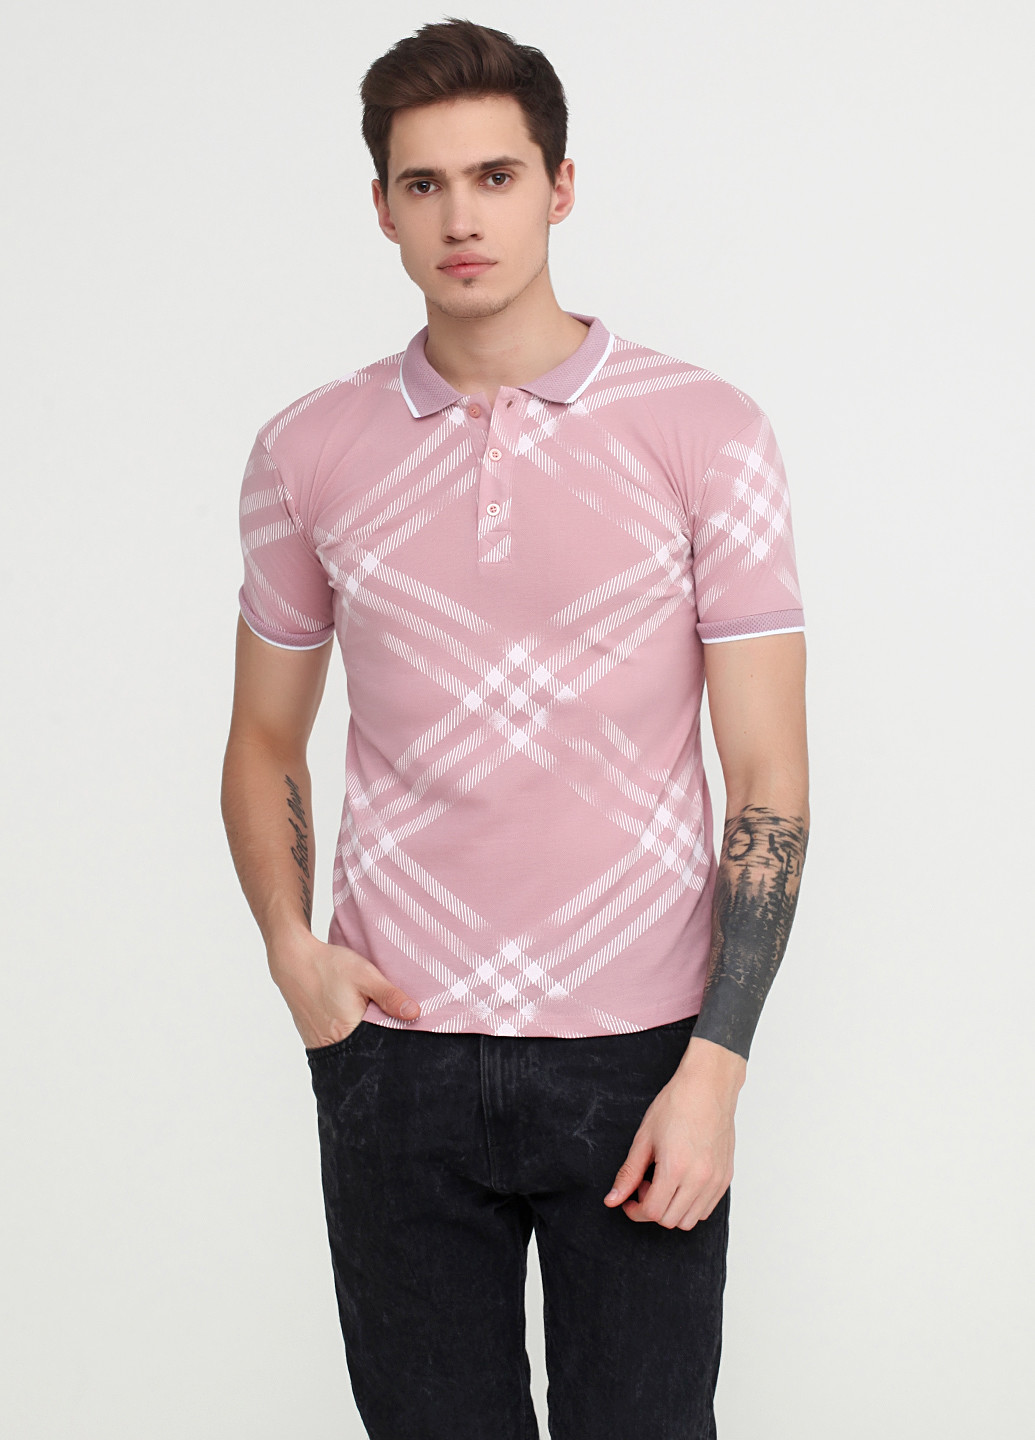 Темно-розовая футболка-поло для мужчин Barazza с абстрактным узором